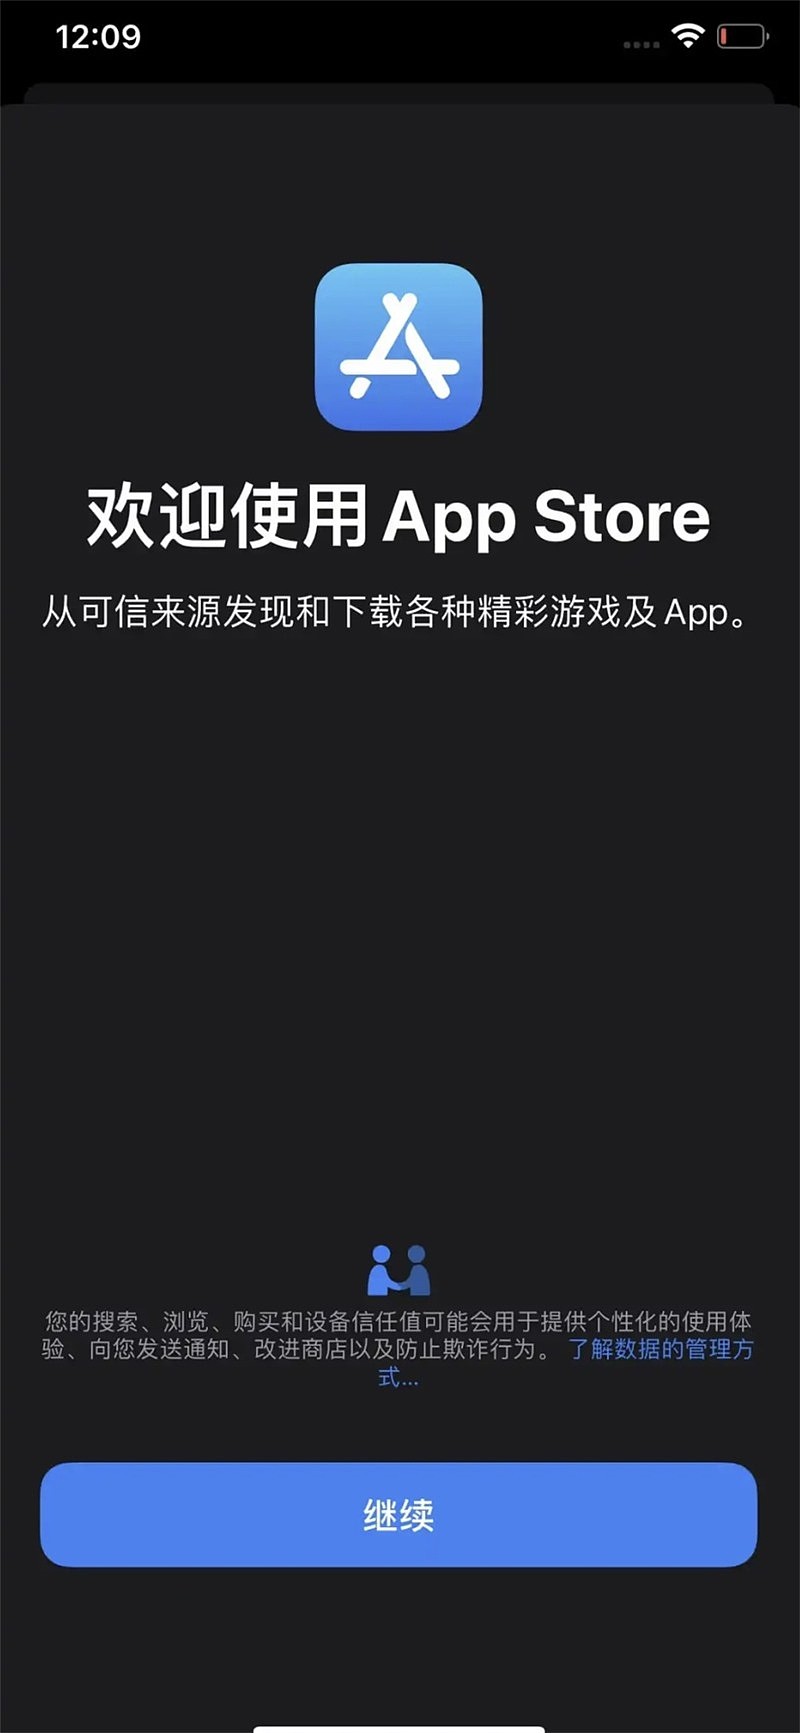 苹果 iOS 14.7 Beta 5 新增 App Store 启动页：强调「从可信来源下载游戏及 App」 - 1